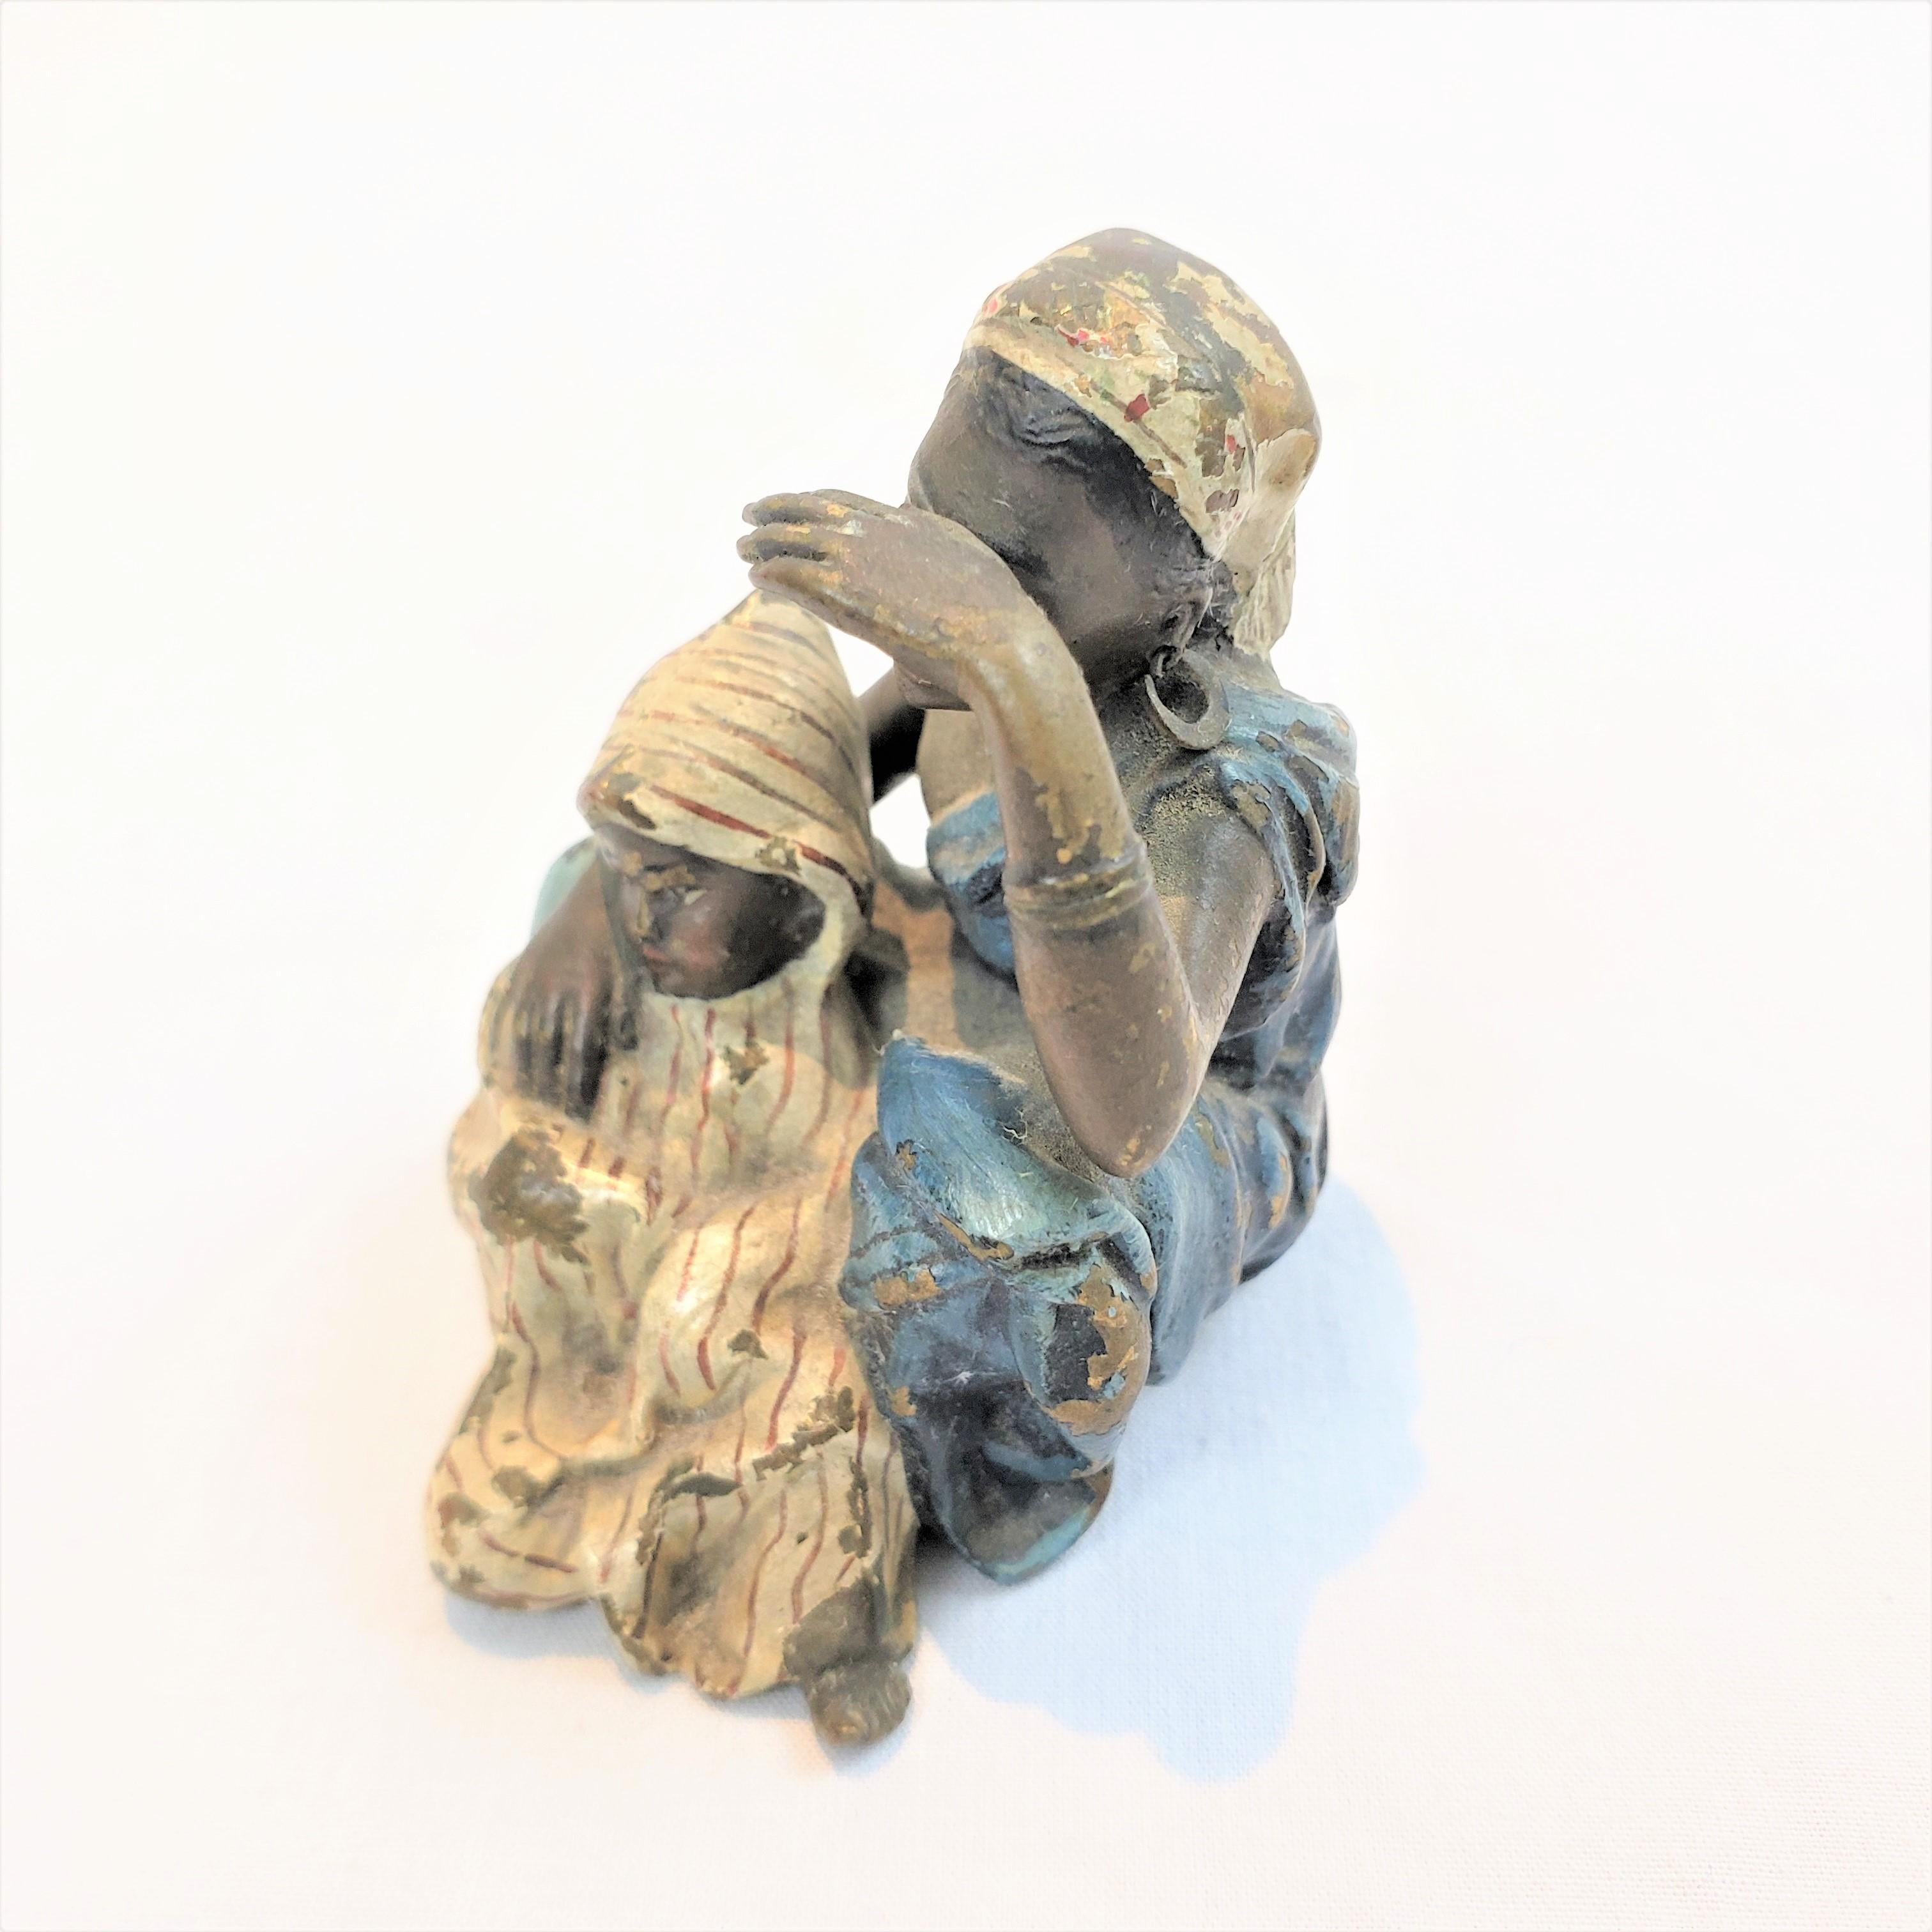 Escultura de bronce antiguo de una madre y un niño árabes sentados, firmada por Franz Bergman Besarabia en venta